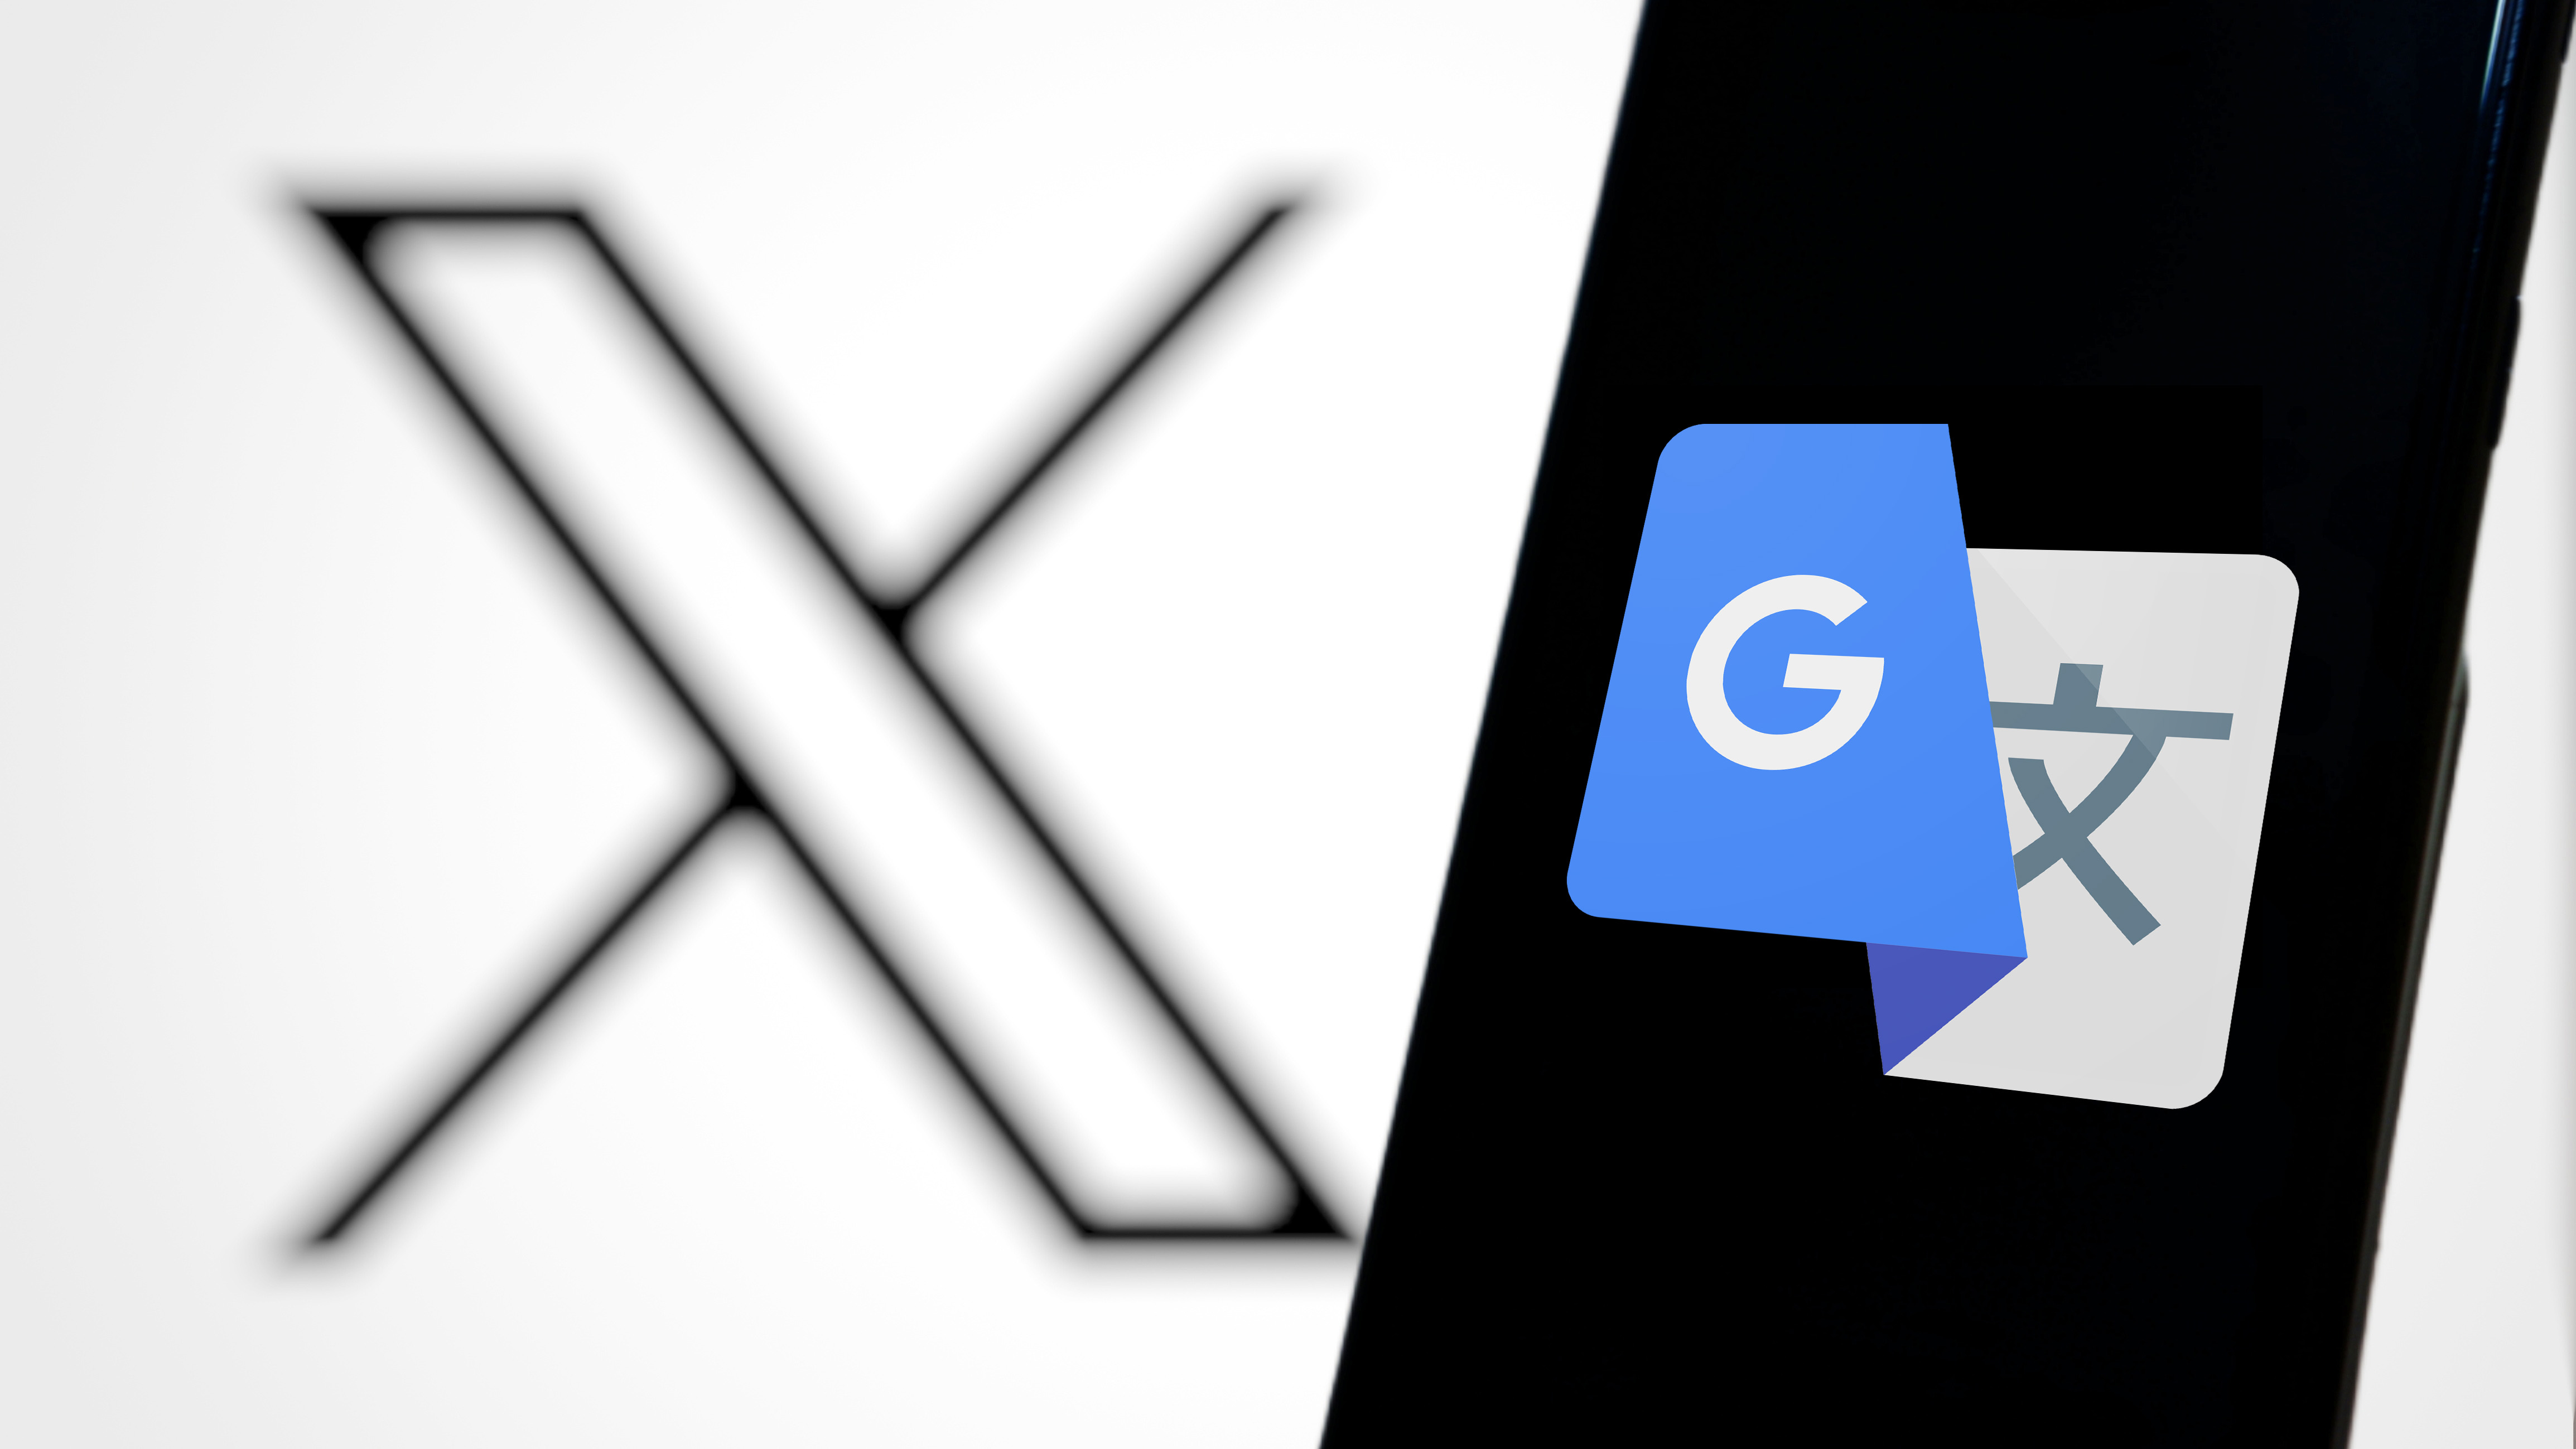 Xのロゴを背景にスマートフォンにGoogle翻訳のロゴが表示されている。